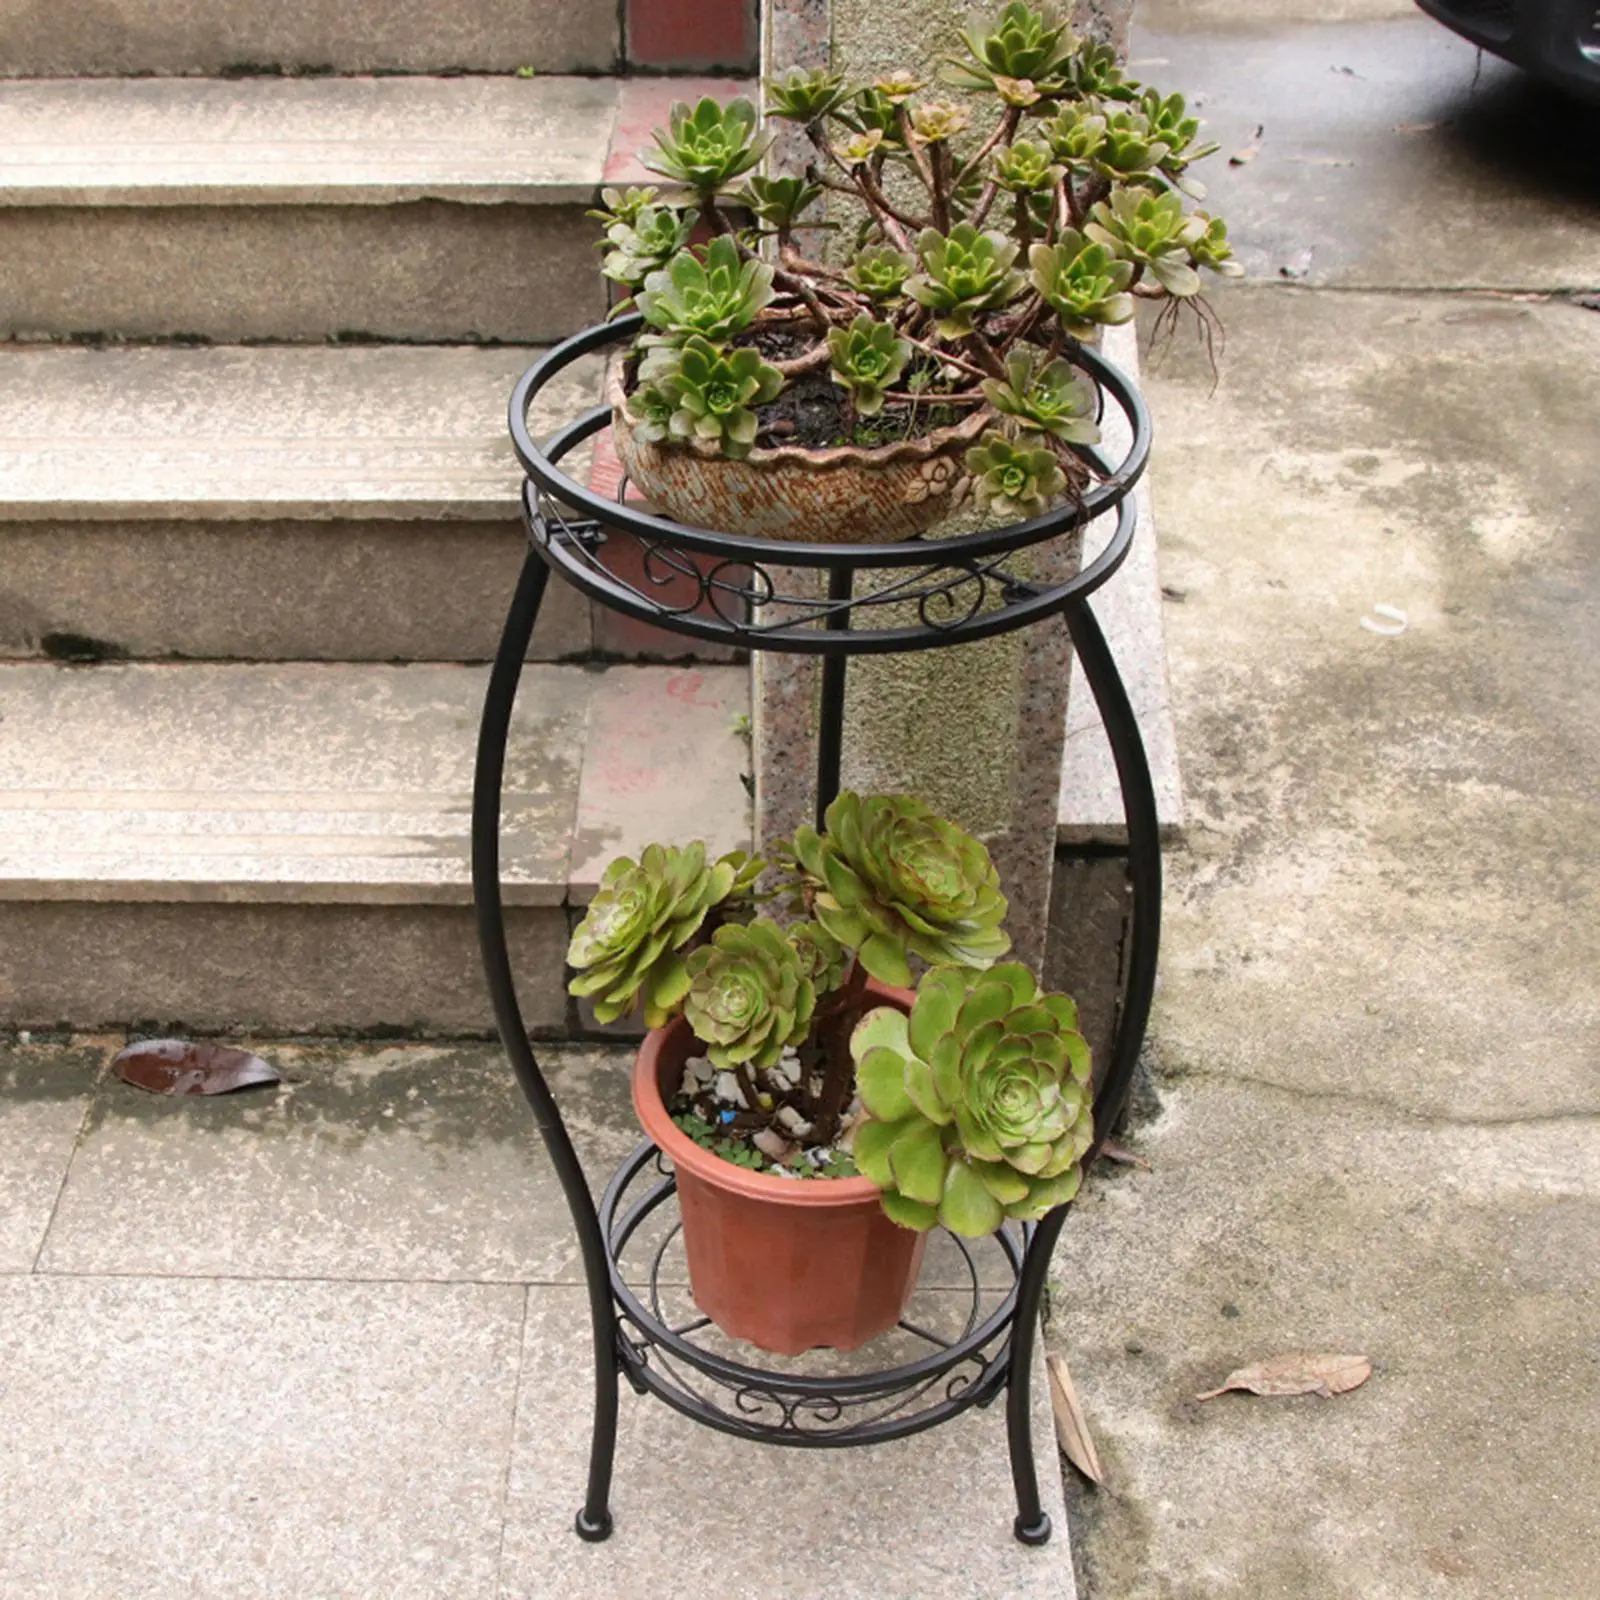 Metal Potted Stand, Rustproof Decorative Flower Pot Rack Indoor Outdoor Iron Art Planter Holders for Garden, Patio, Lawn